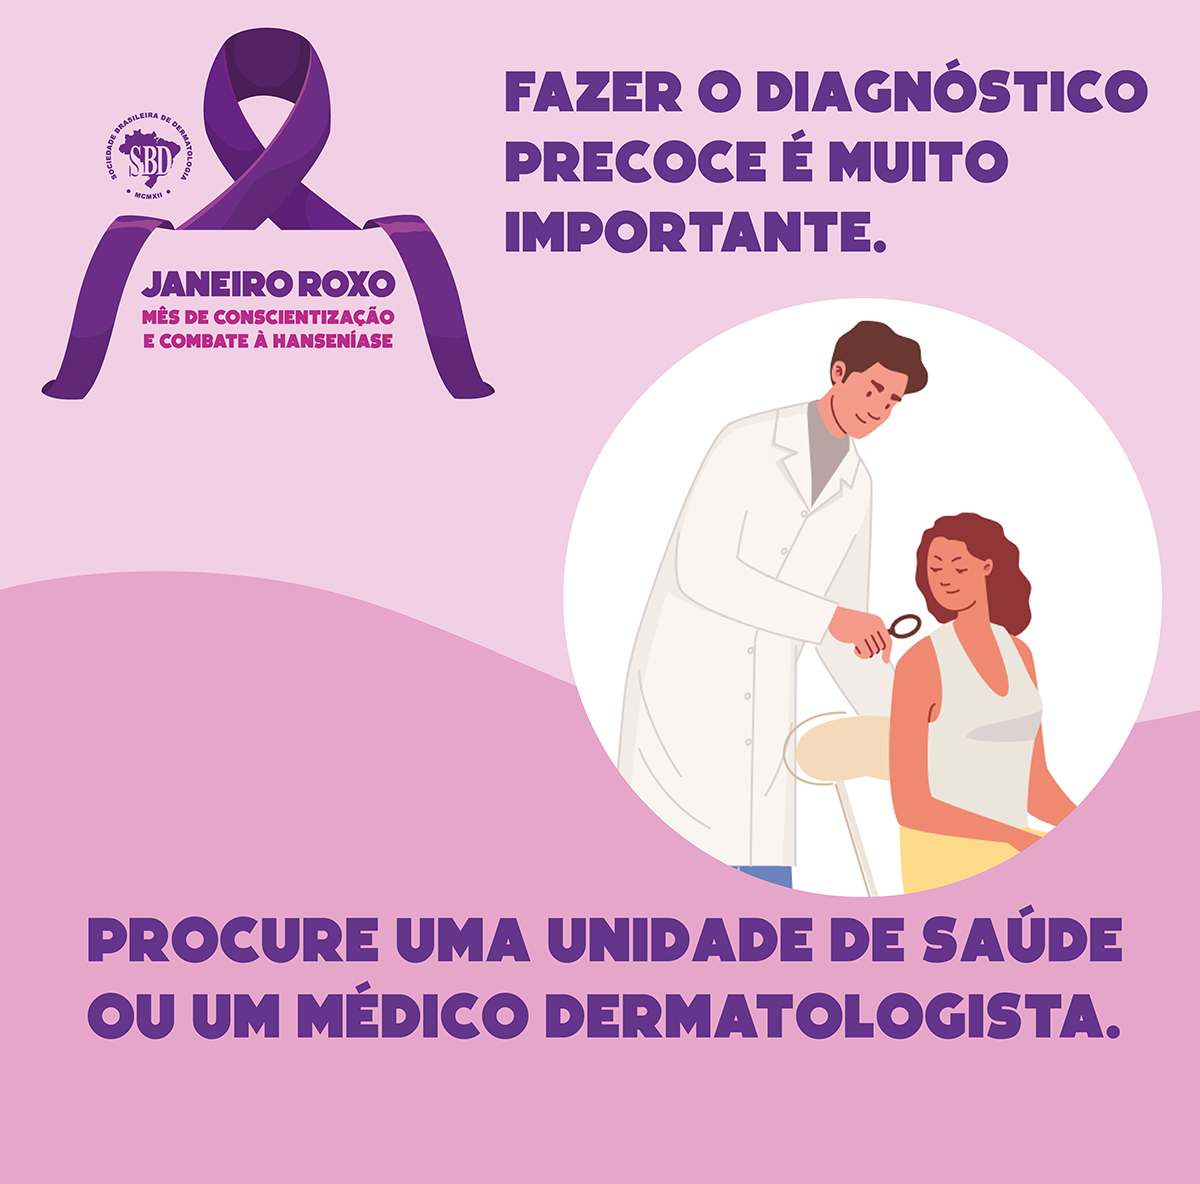 Secretaria Municipal da Saúde de São Paulo - A Hanseníase é uma doença  causada por uma bactéria chamada bacilo de Hansen que compromete  principalmente a pele e os nervos, deixando sequelas se